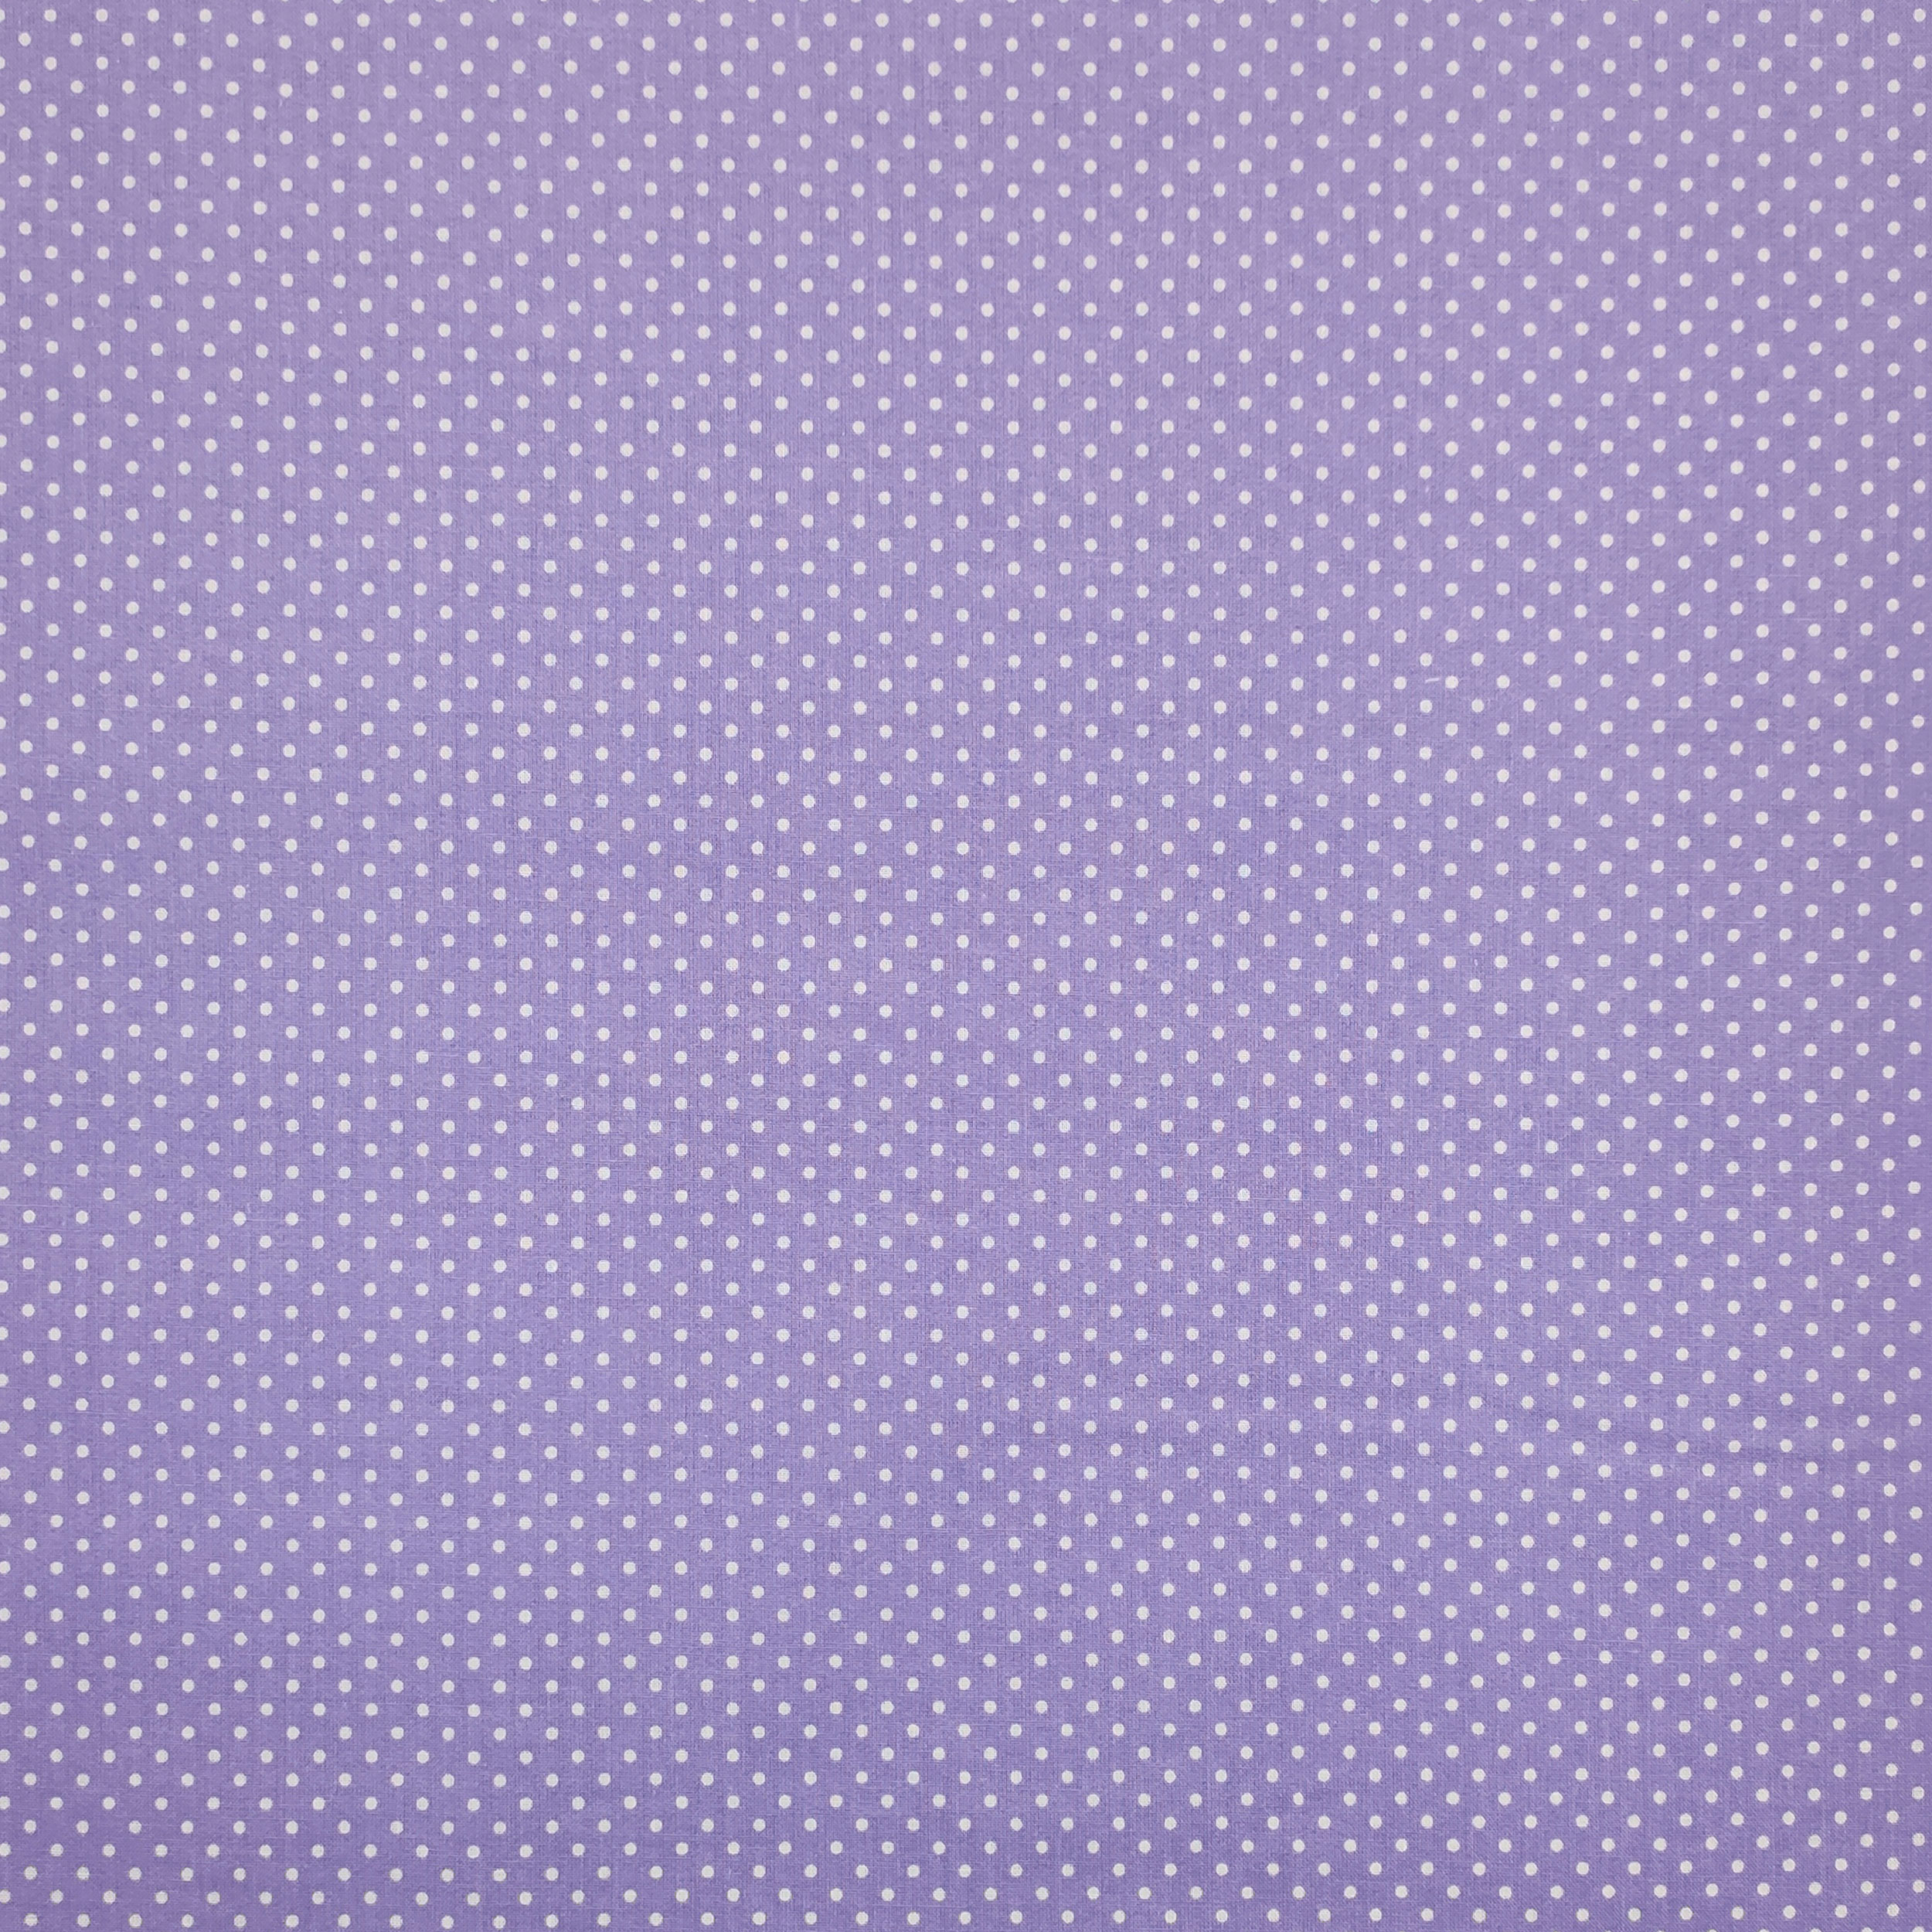 stoffa cotone pois sfondo lilla